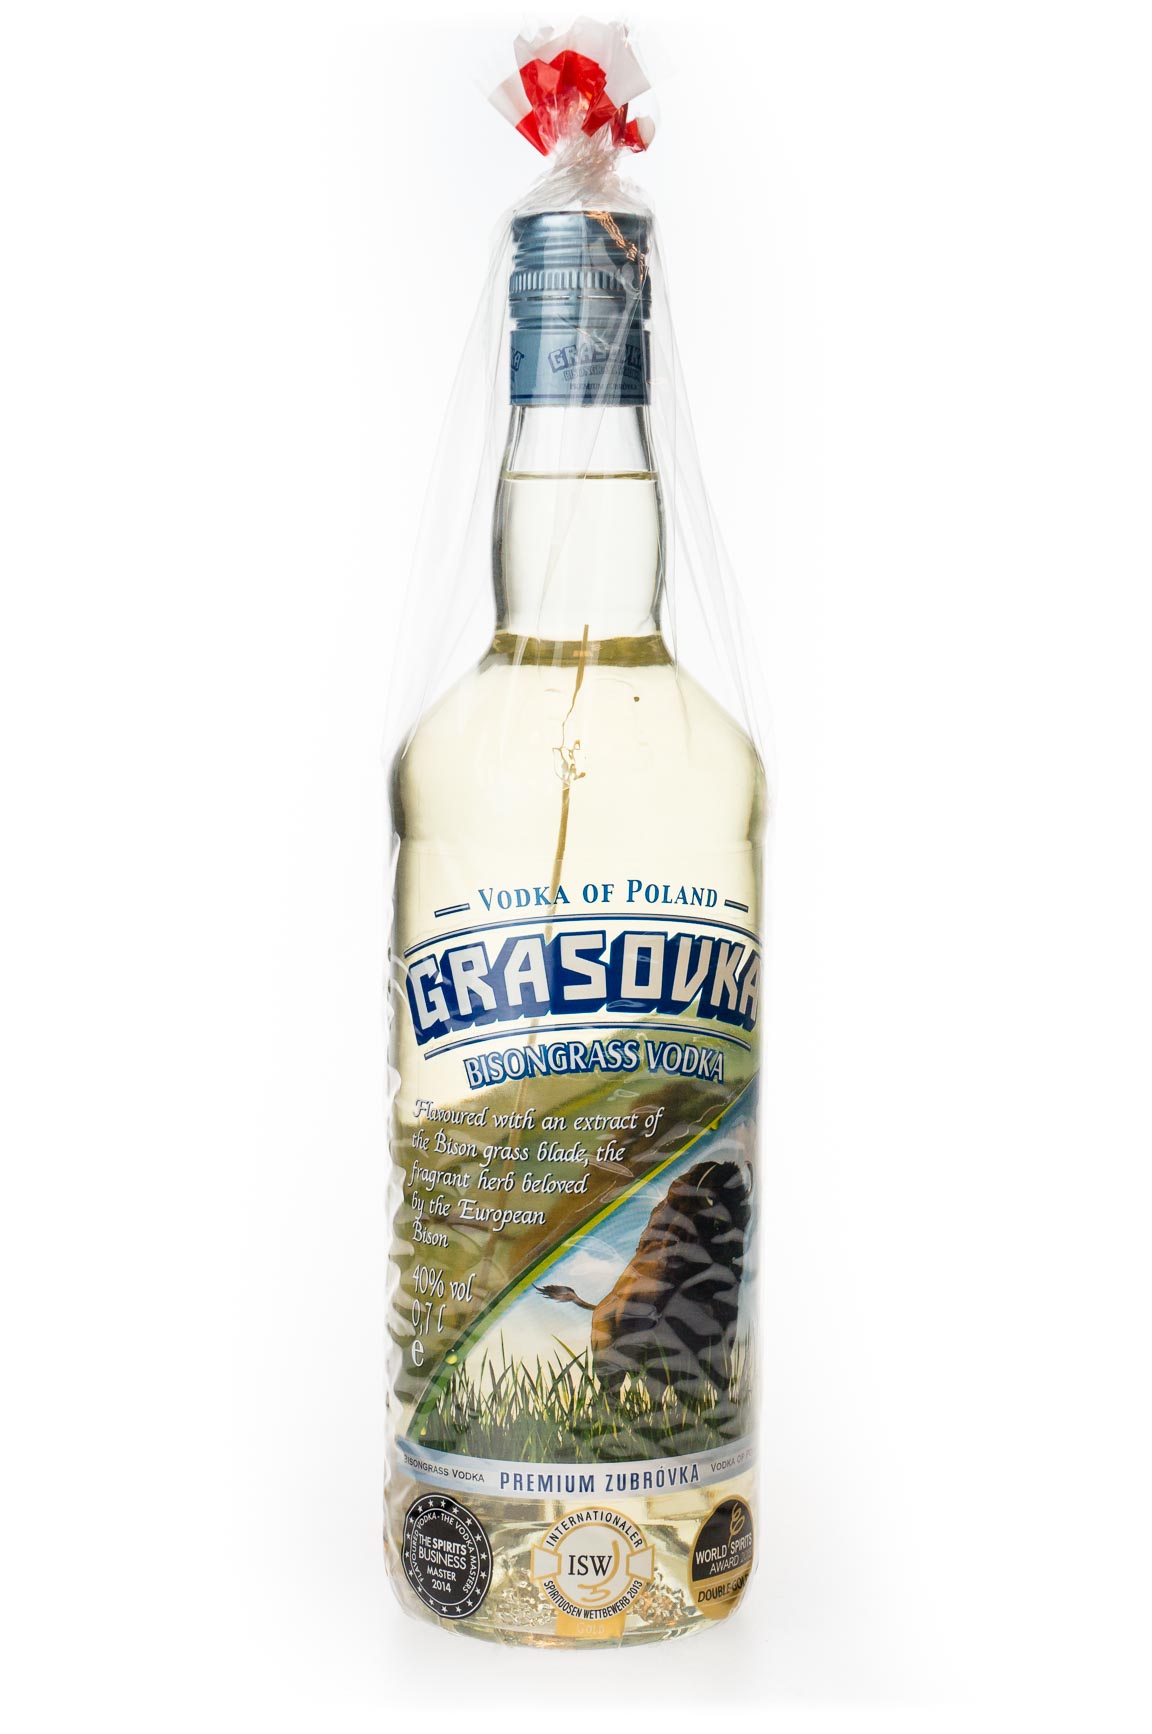 Grasovka Bisongrass Vodka günstig kaufen